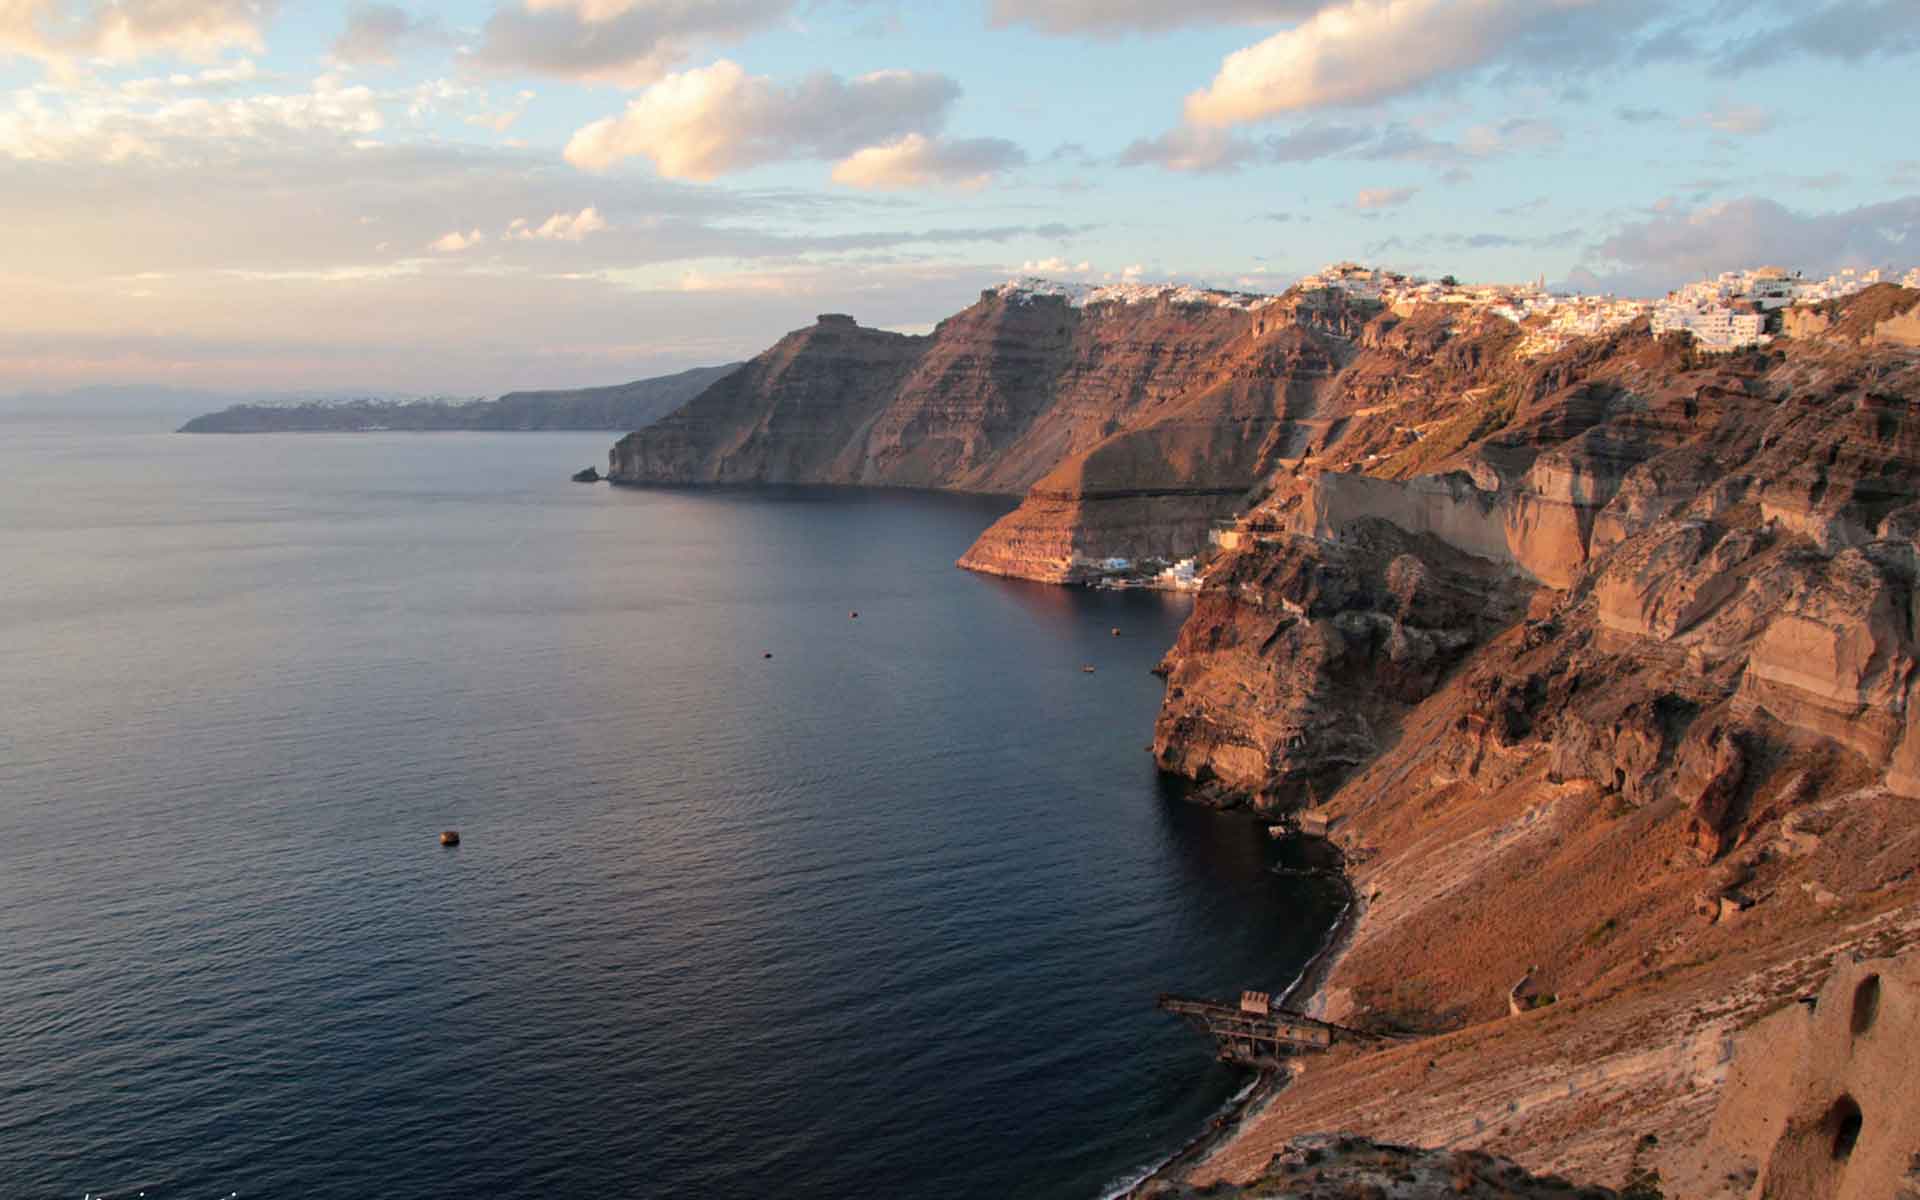 The Quaternary Santorini Caldera